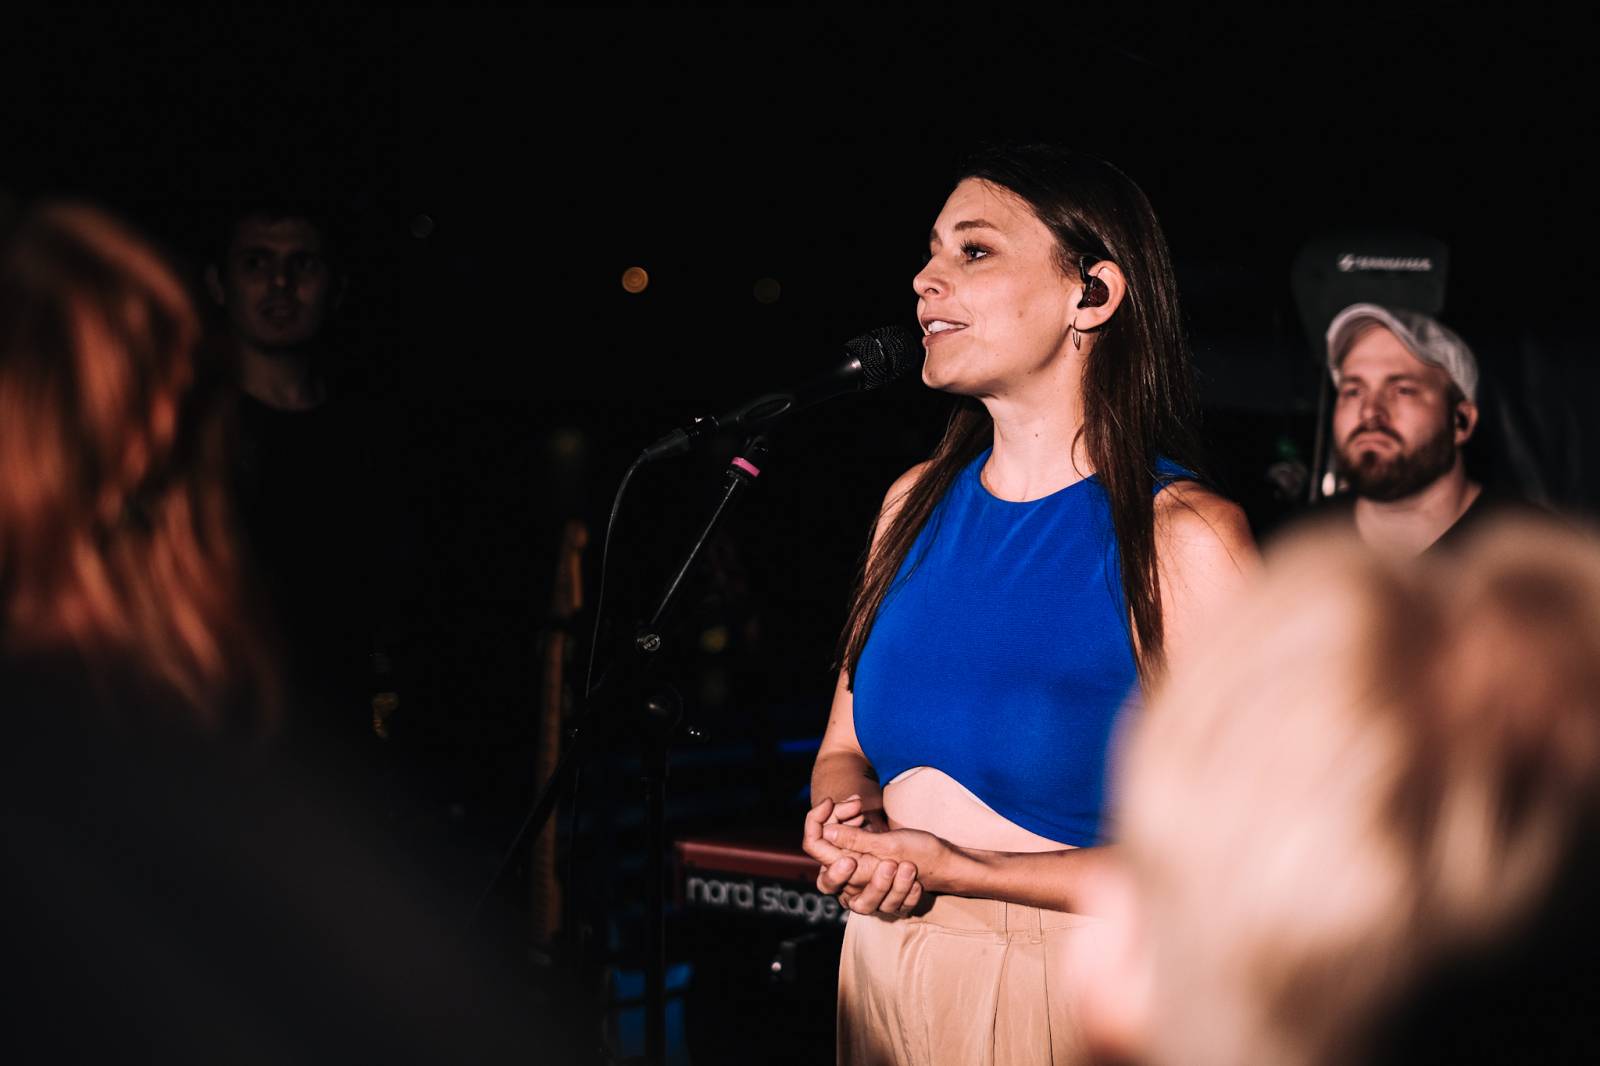 Kateřina Marie Tichá s Bandjeez zazpívali fanouškům na Vltavě, potěšili i novými písněmi